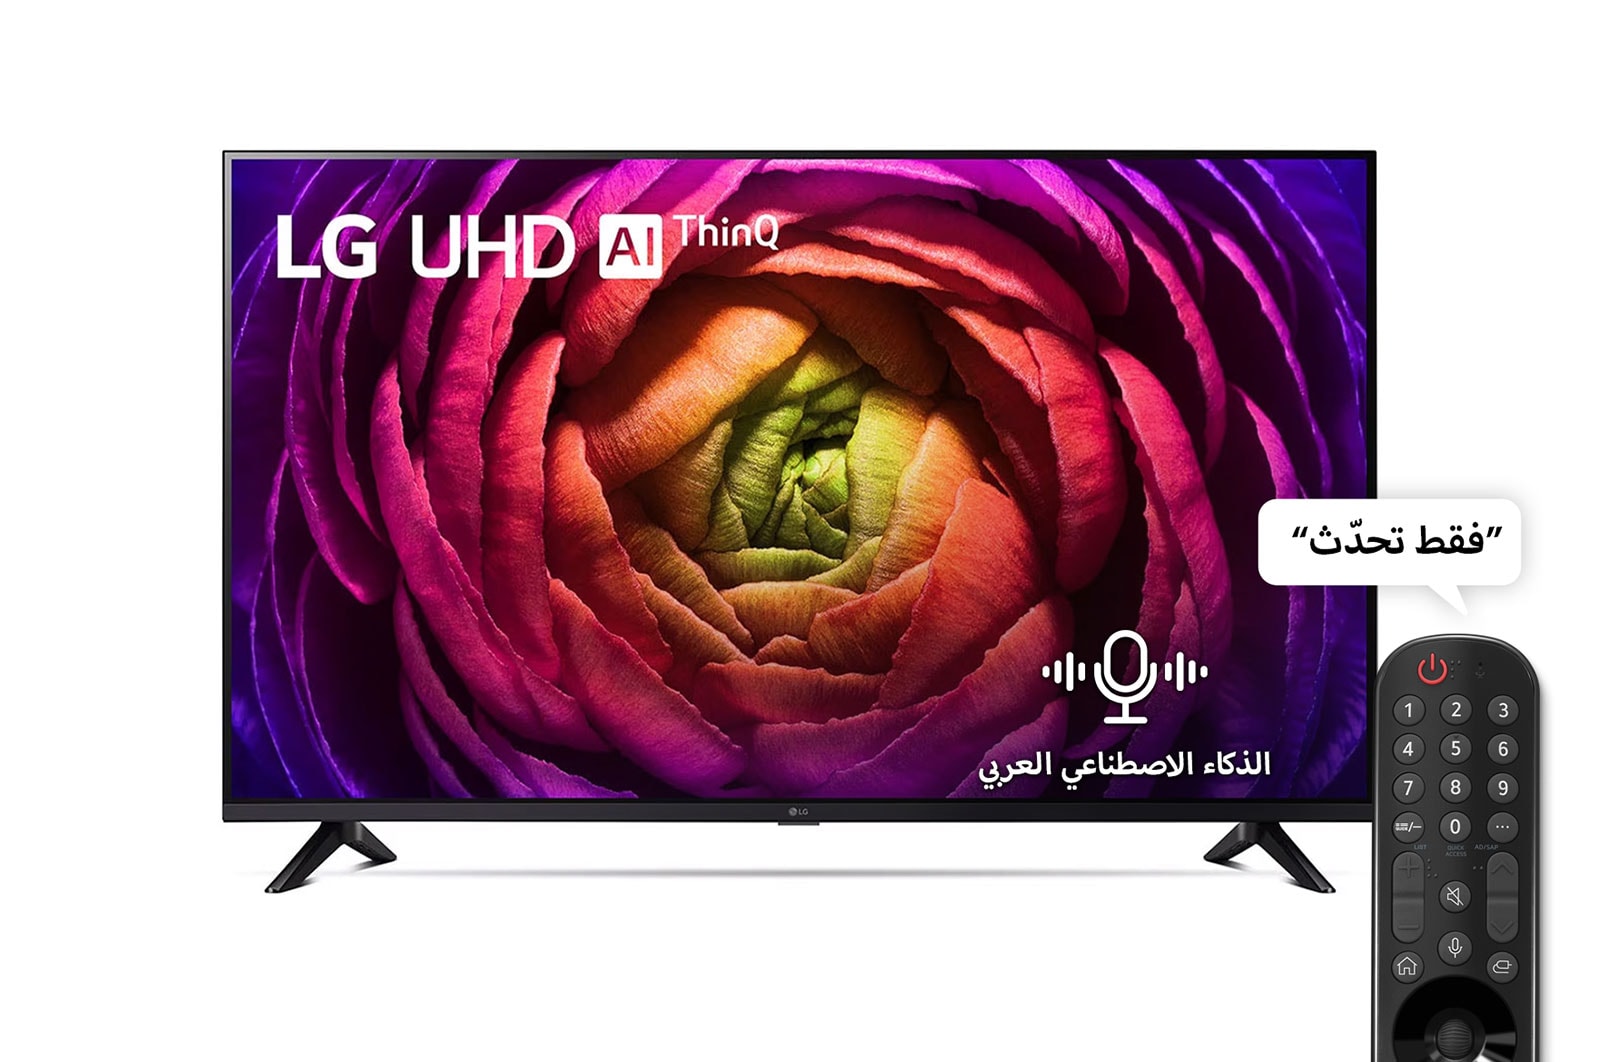 Televisor LG 55 55UR7300PSA Led Ultra HD 4K (2023)